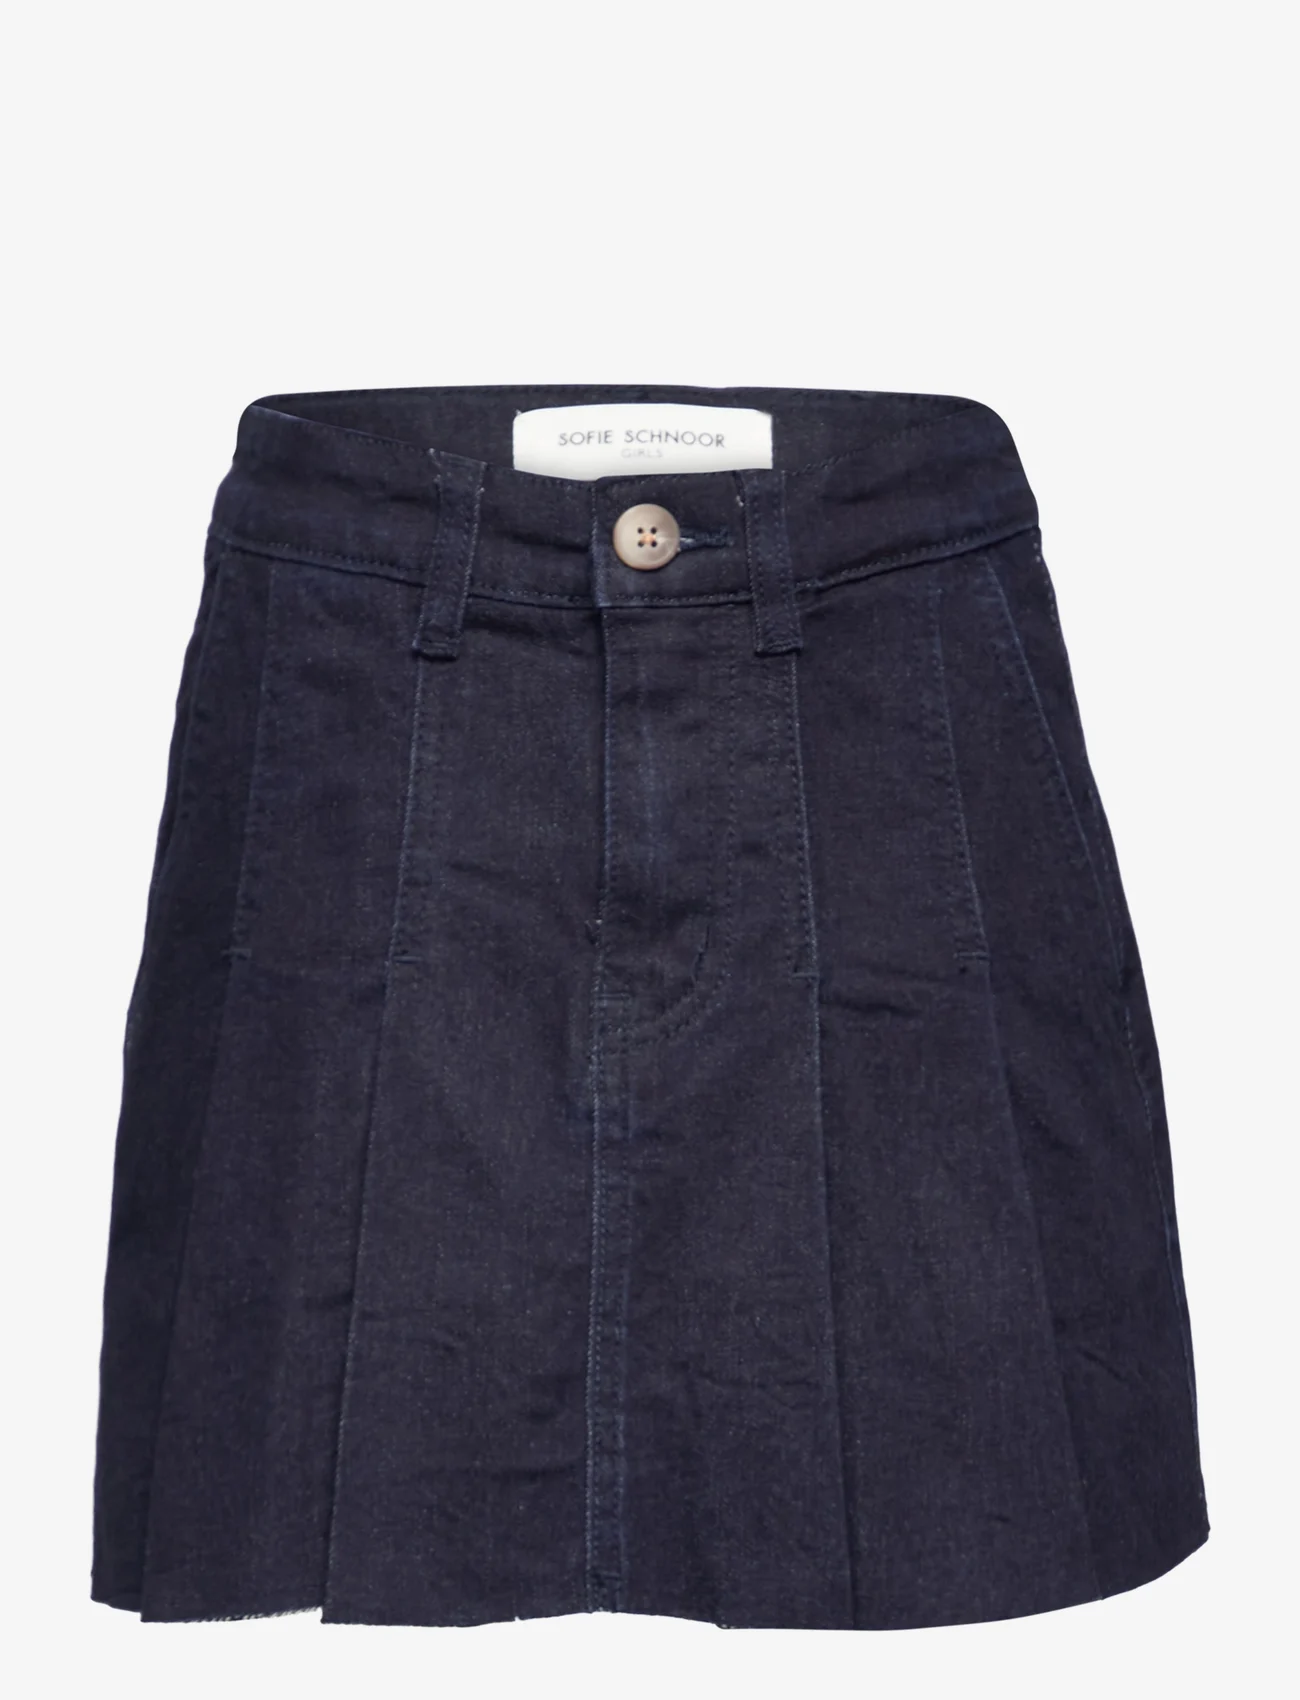 Sofie Schnoor Young - Skirt - džinsiniai sijonai - dark blue - 0